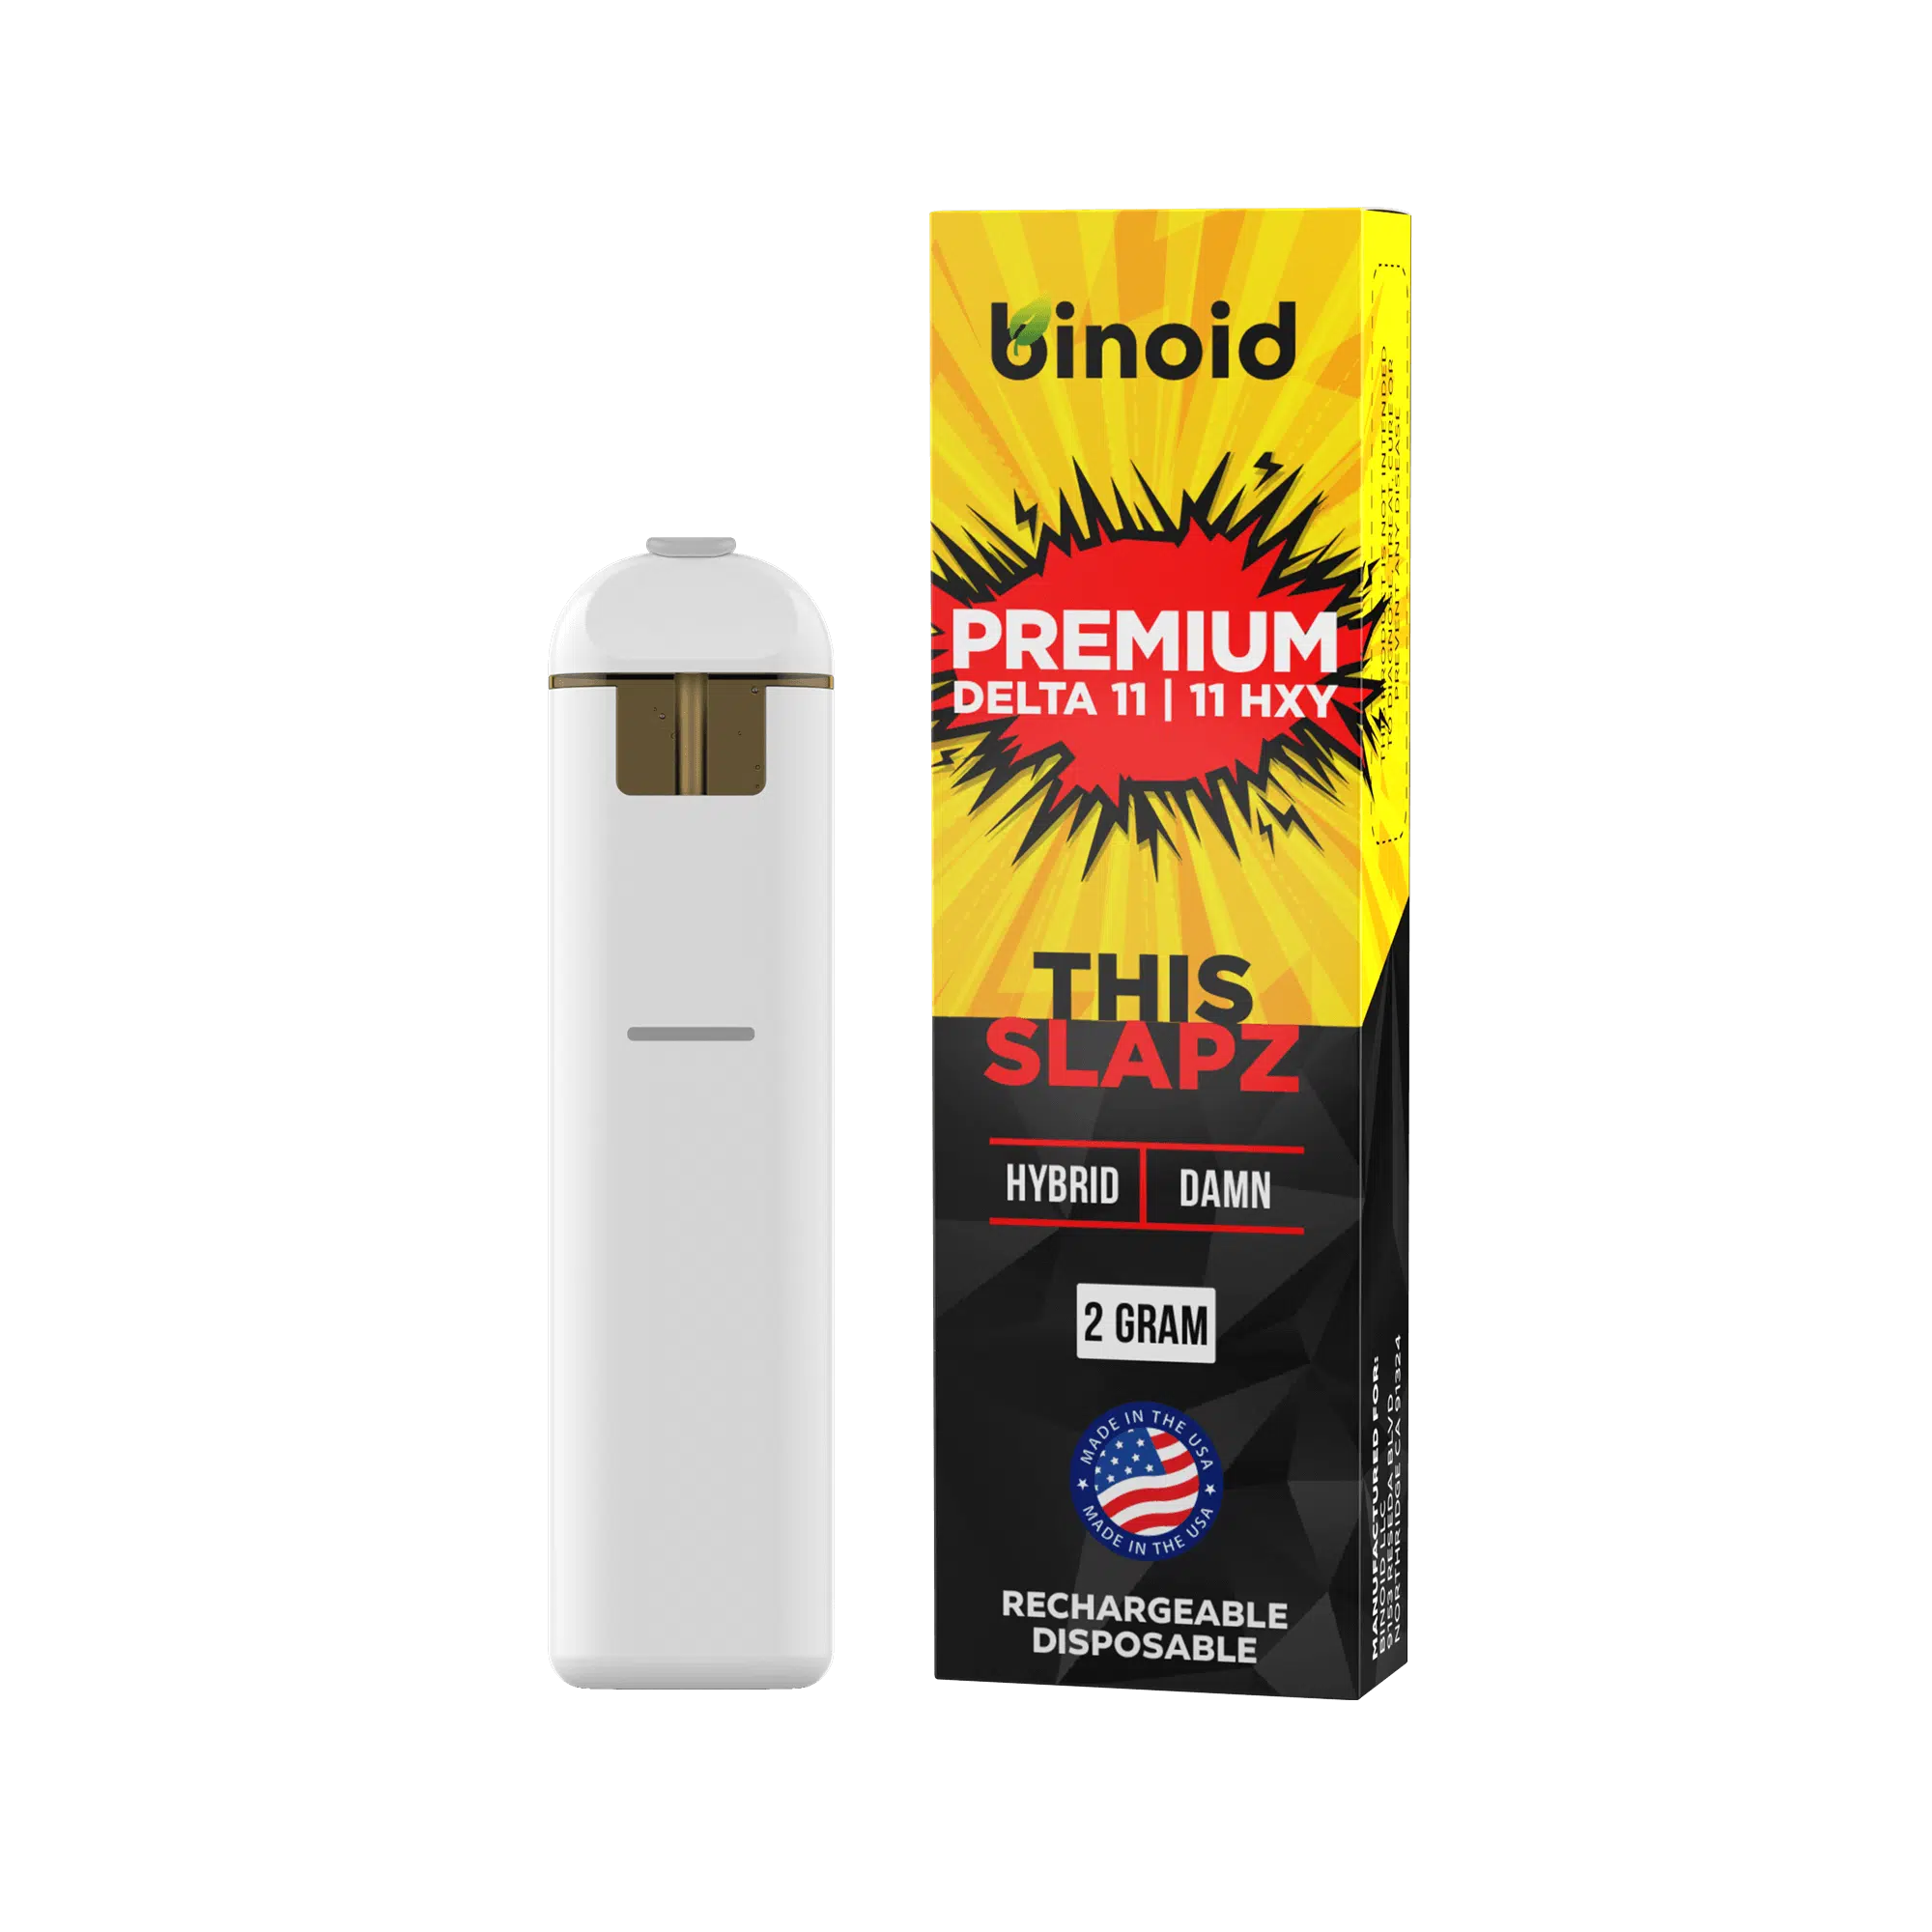 Binoid Premium Delta-11 + 11-Hxy Disposables (2g) Best Price